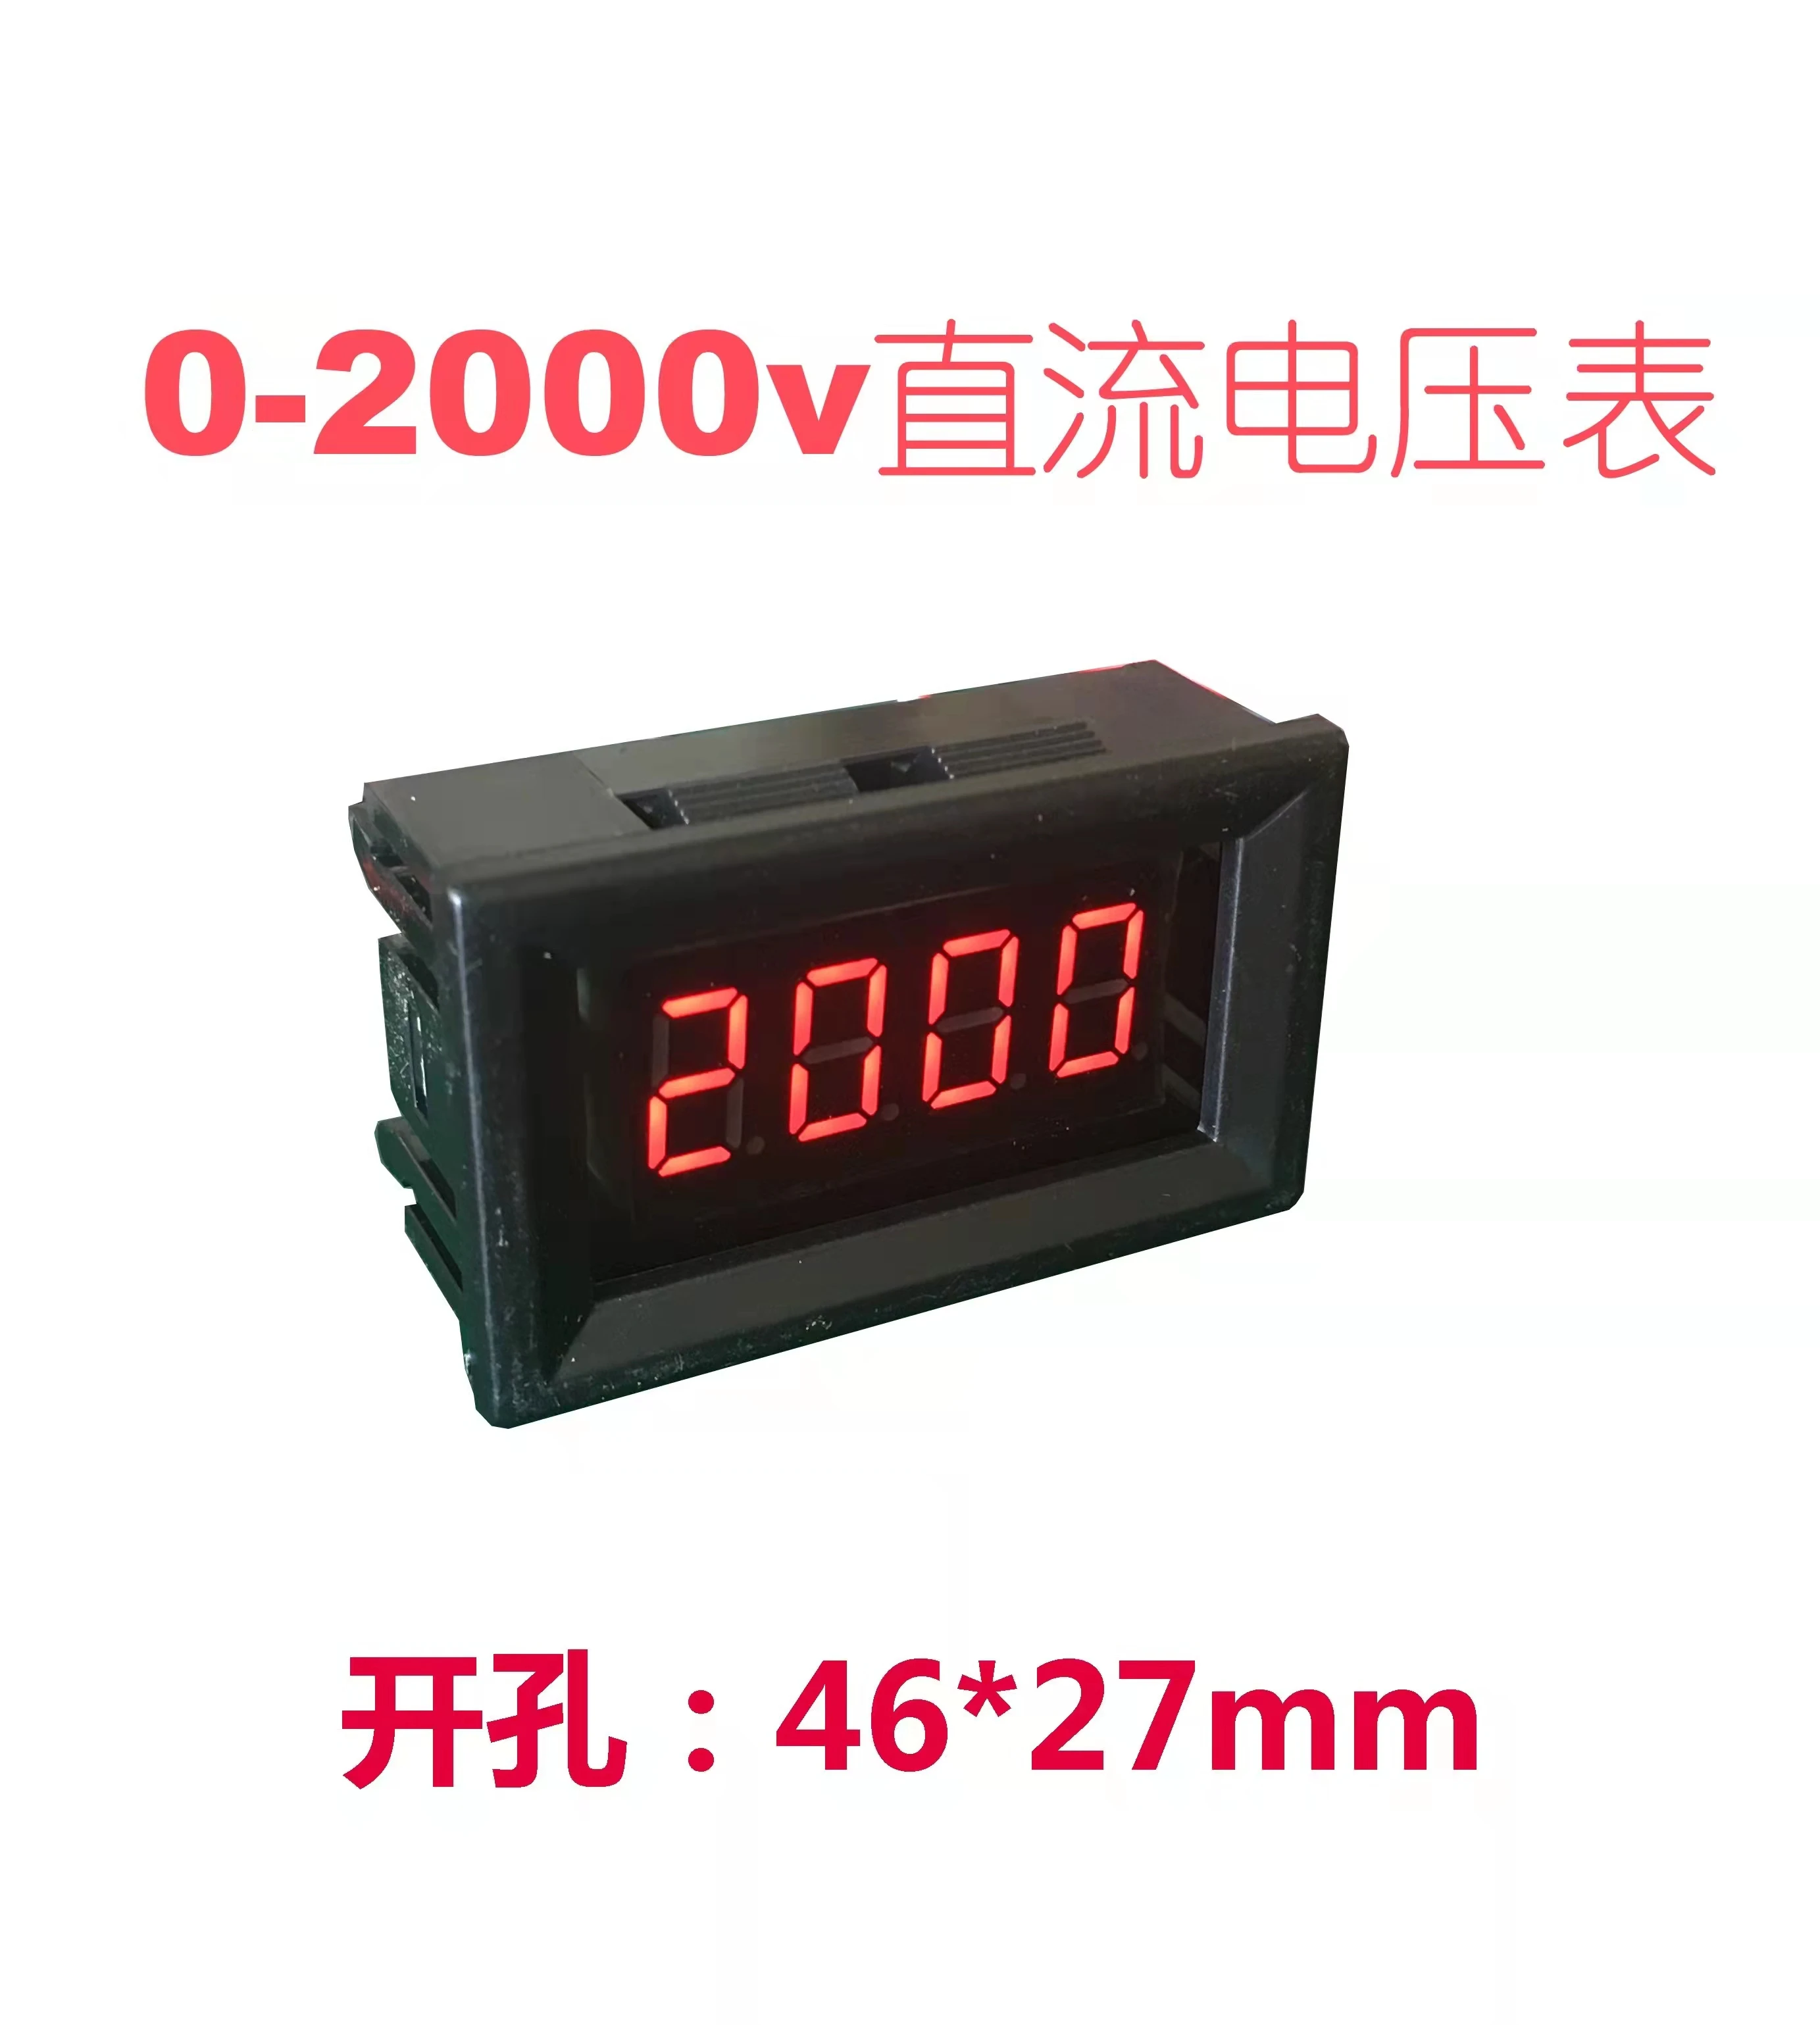 

v27dc0-2000v high voltage voltmeter head DC digital display voltmeter DC voltmeter 1000